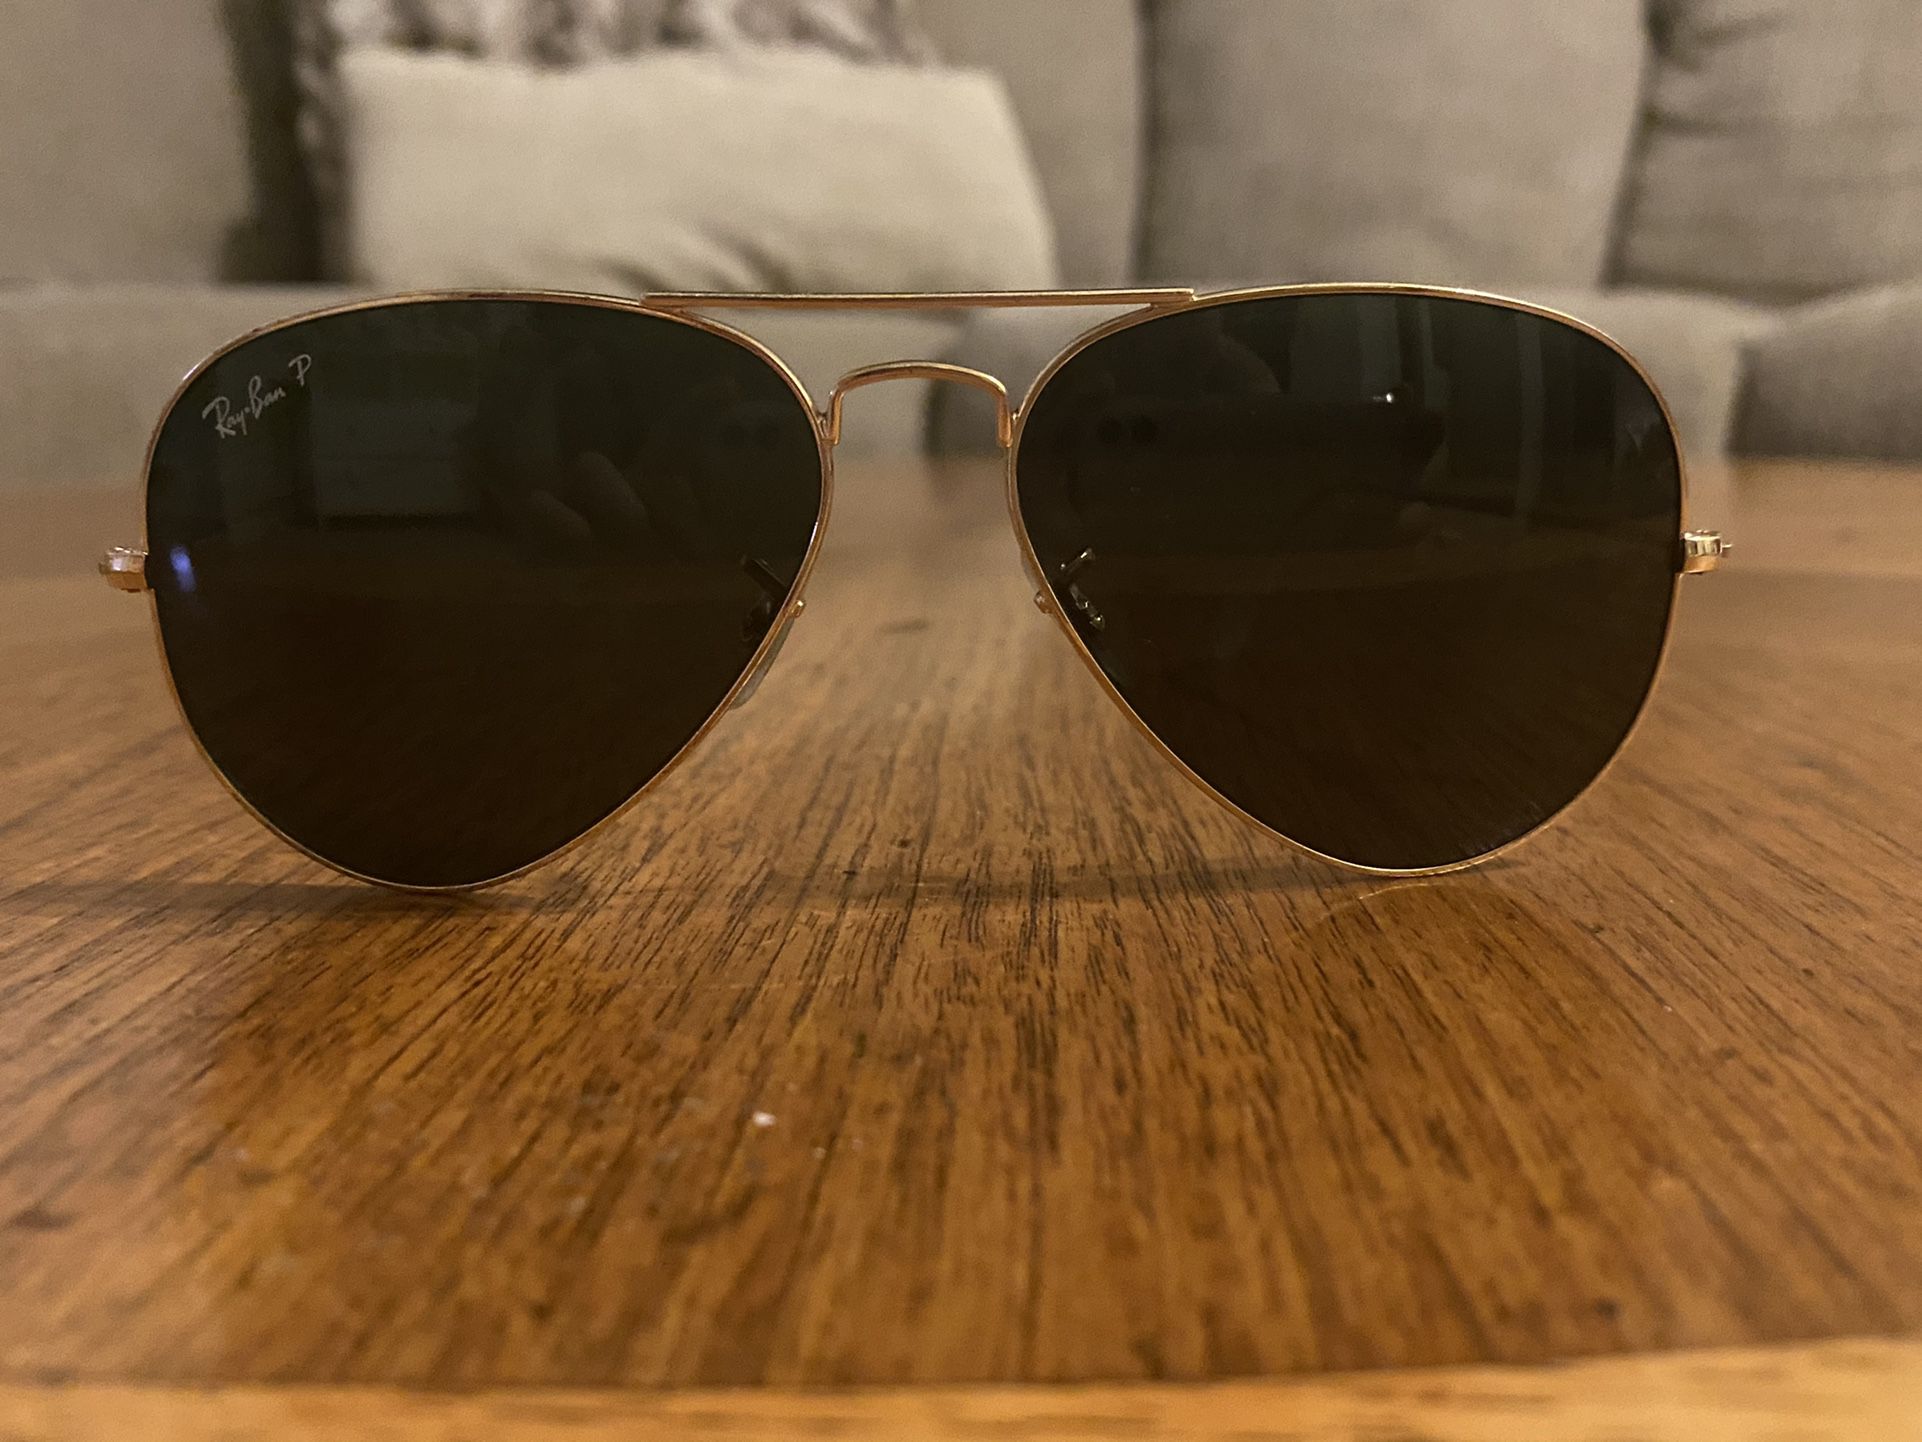 Rayban Aviator Sunglasses 